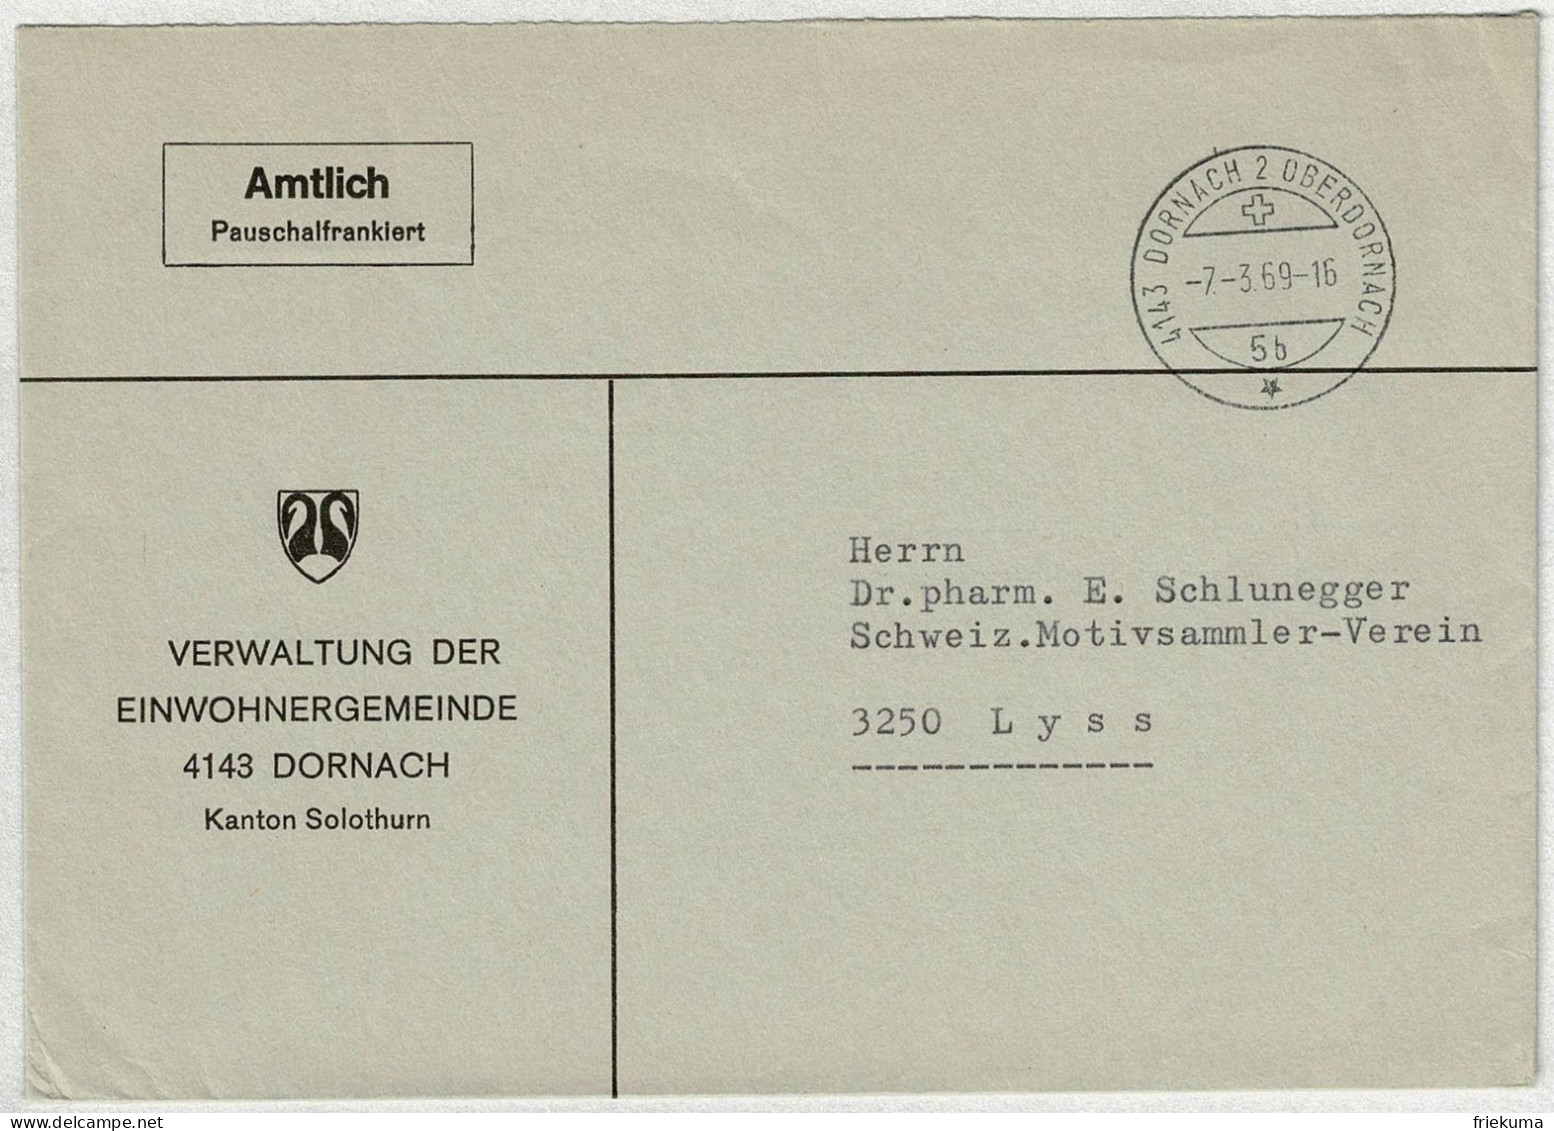 Schweiz 1969, Brief Amtlich Pauschalfrankiert Dornach - Lyss - Storia Postale